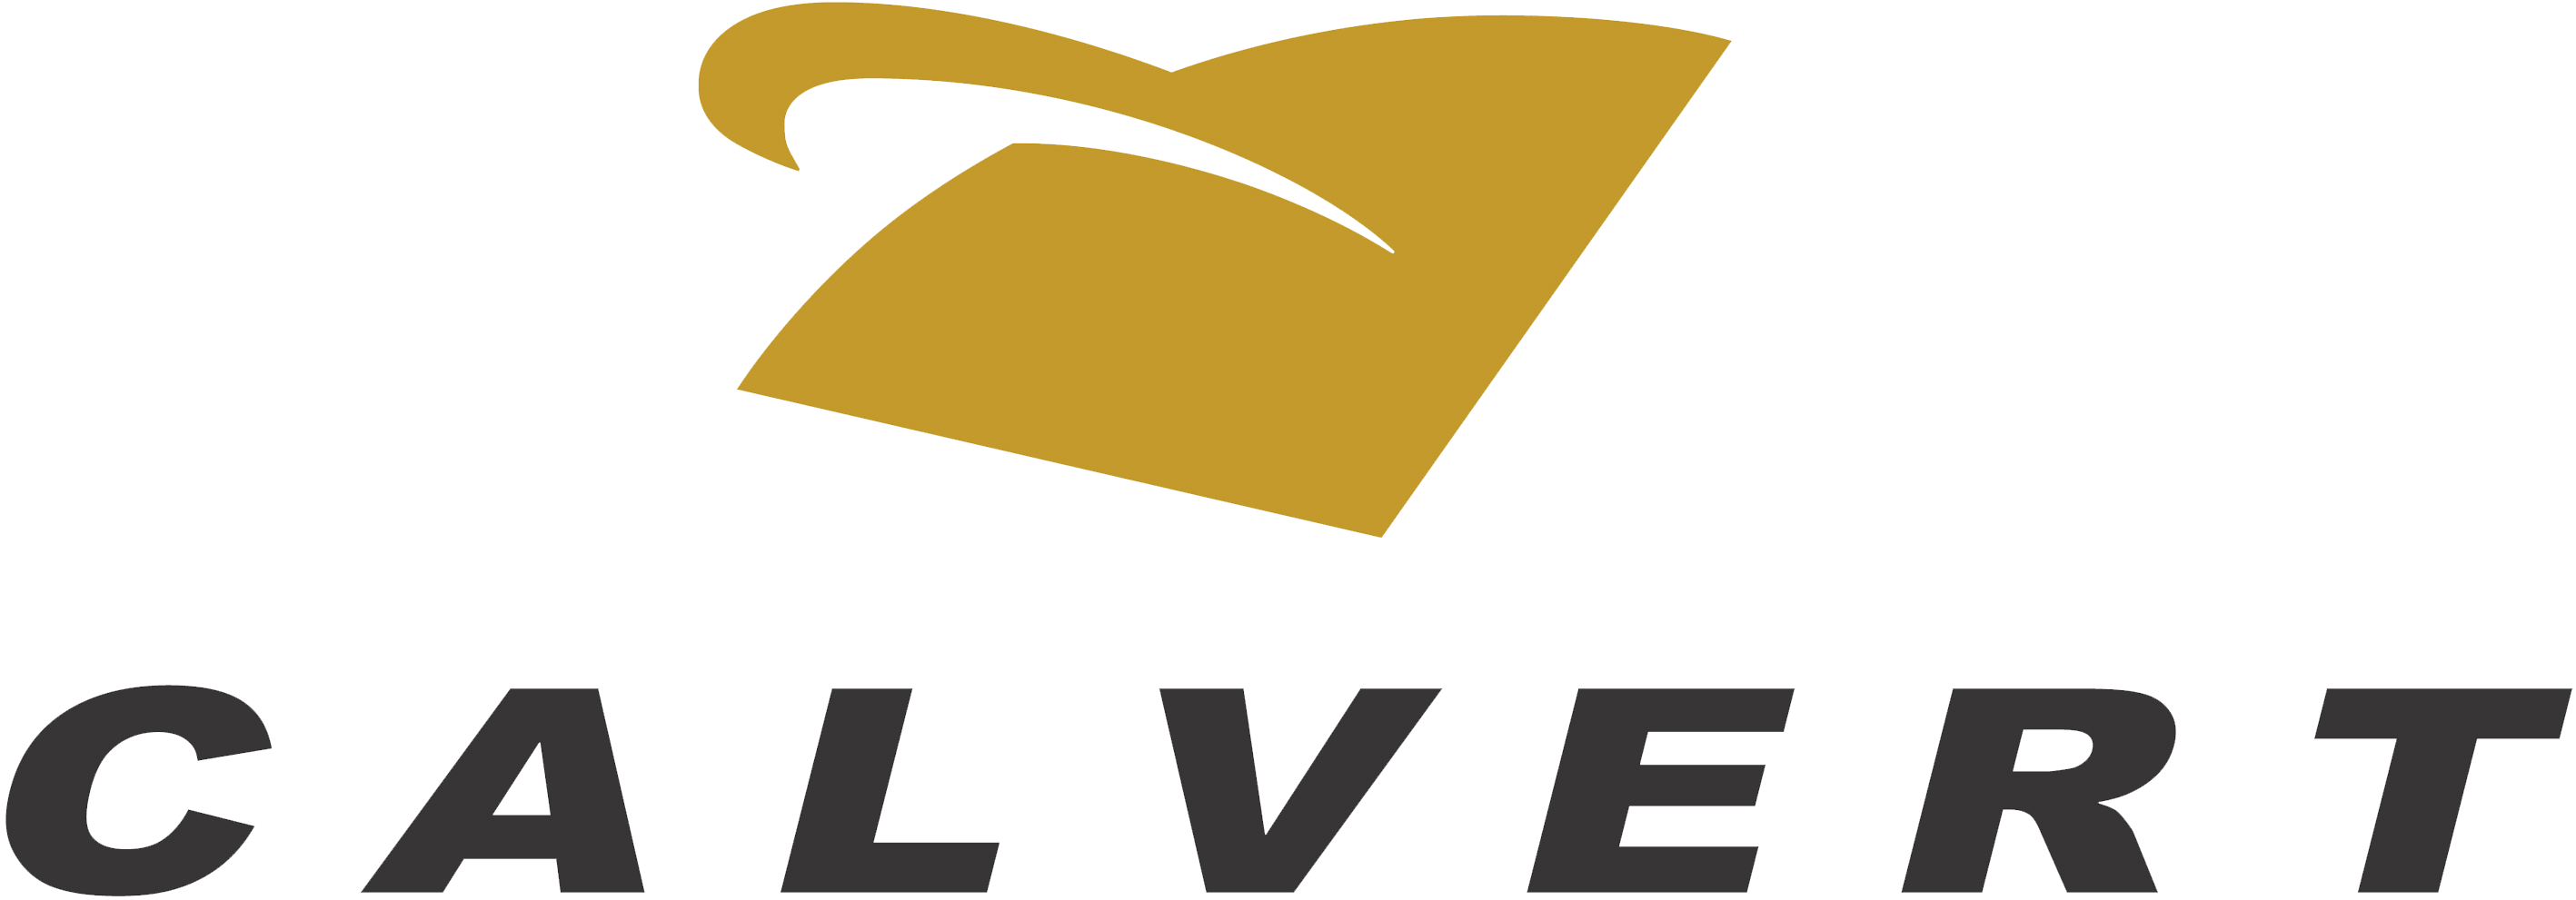 calvert logo